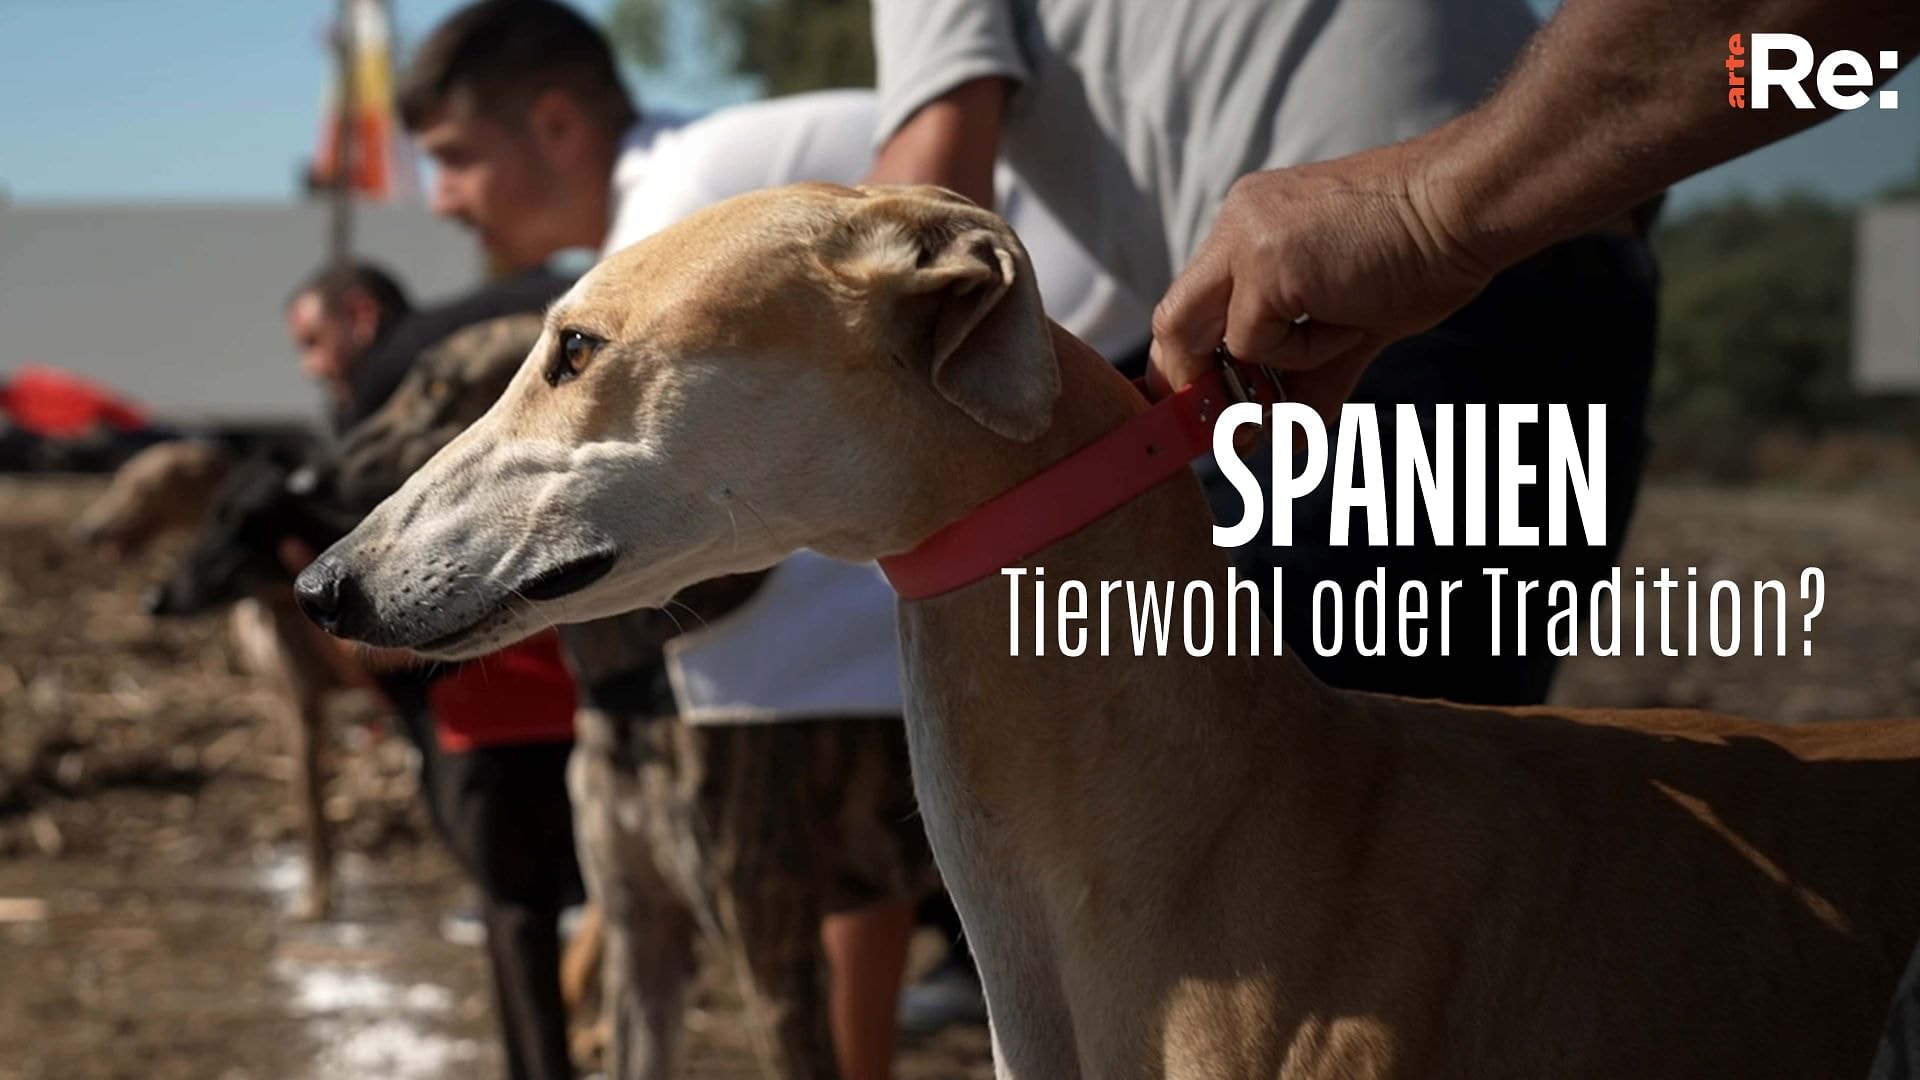 Re: Tierwohl oder Tradition? - Spaniens Tierschutz-Dilemma